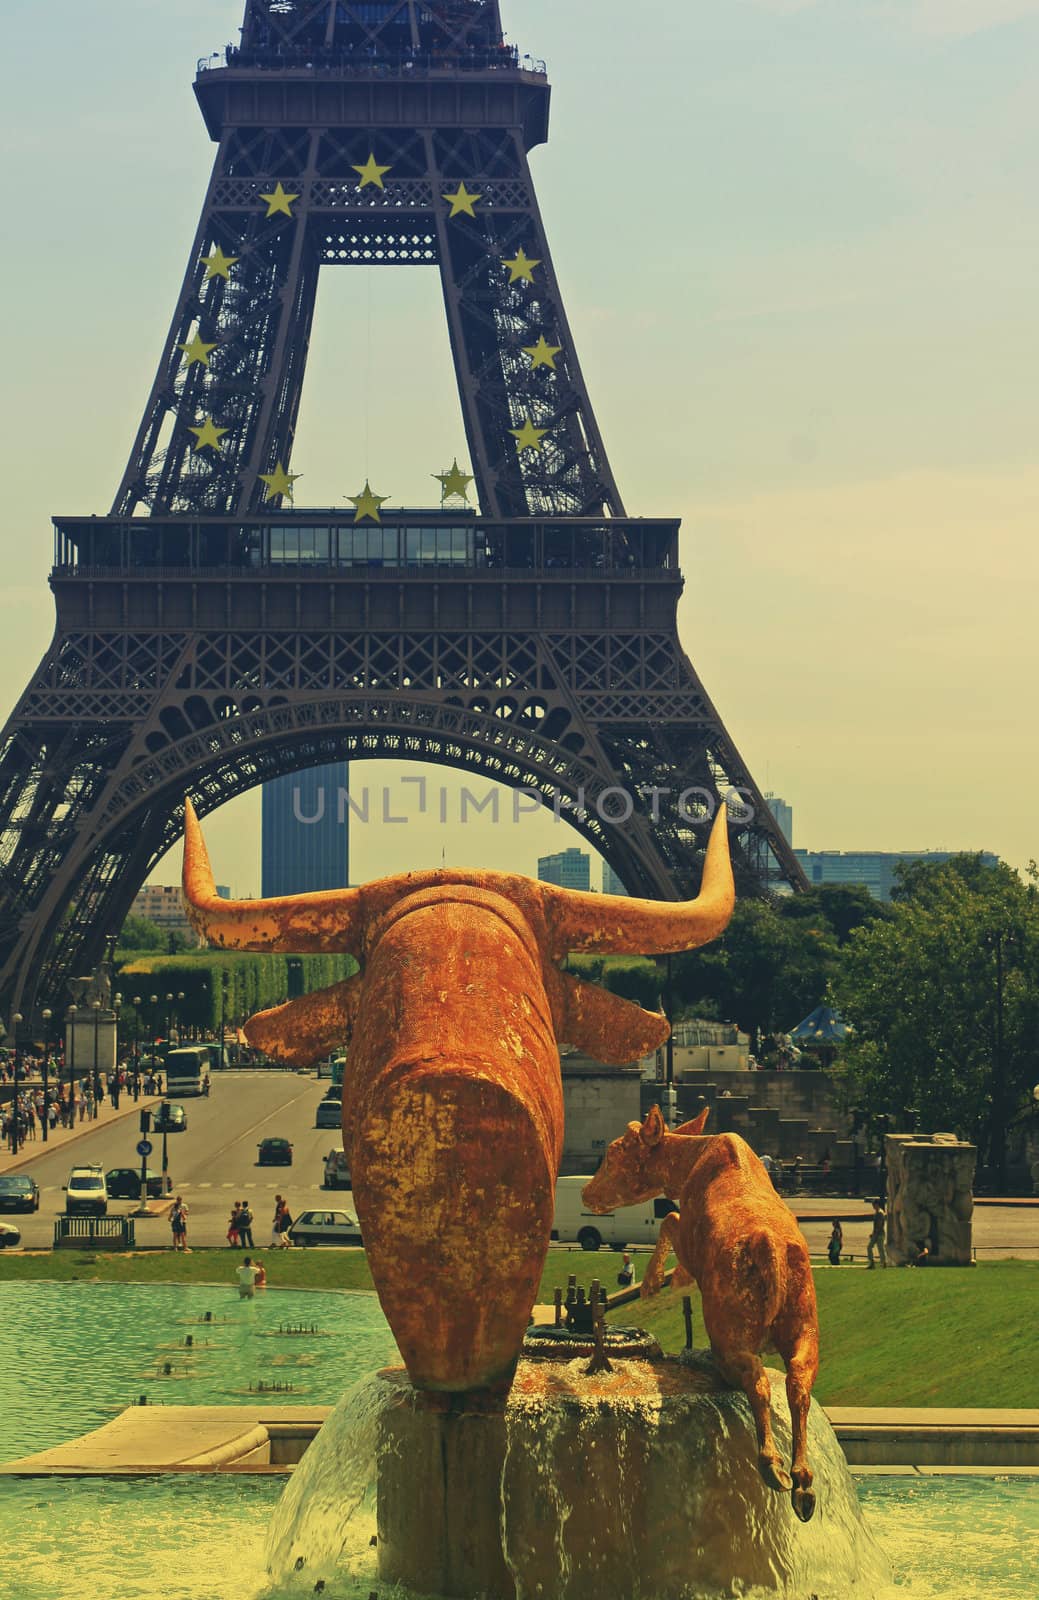 Tour Eiffel Paris France by naffarts2